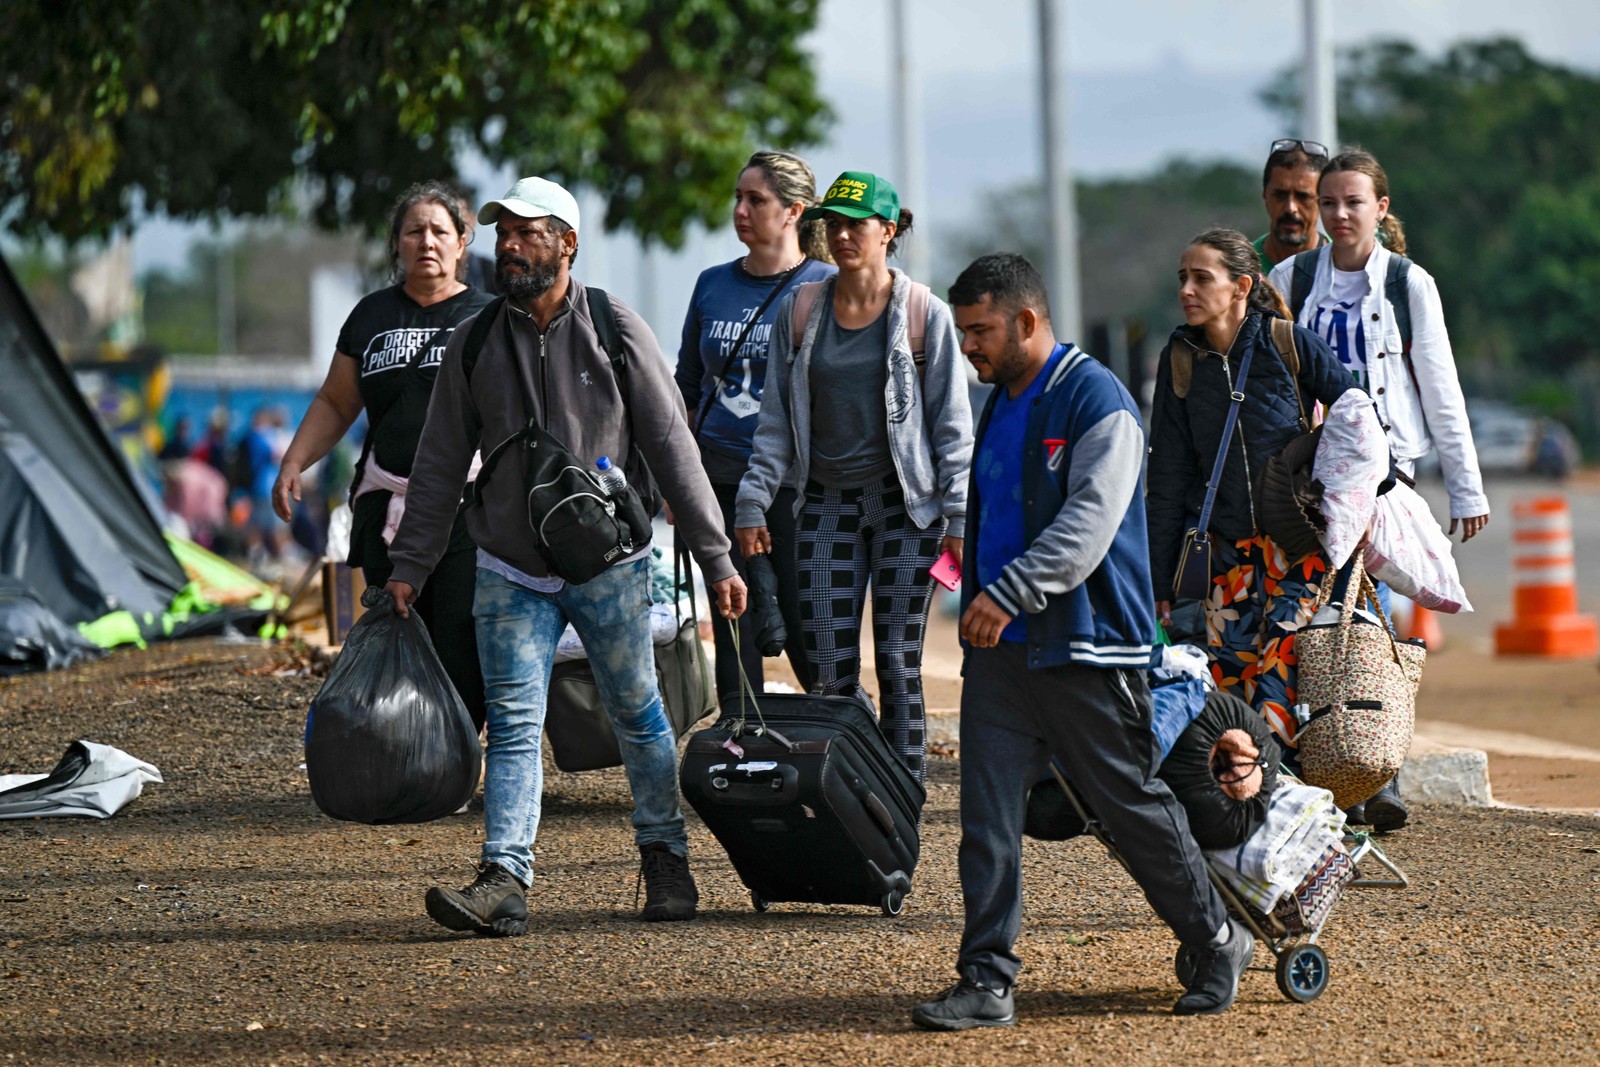 Apoiadores do ex-presidente Bolsonaro deixam a área do acampamento. — Foto: Mauro Pimentel / AFP